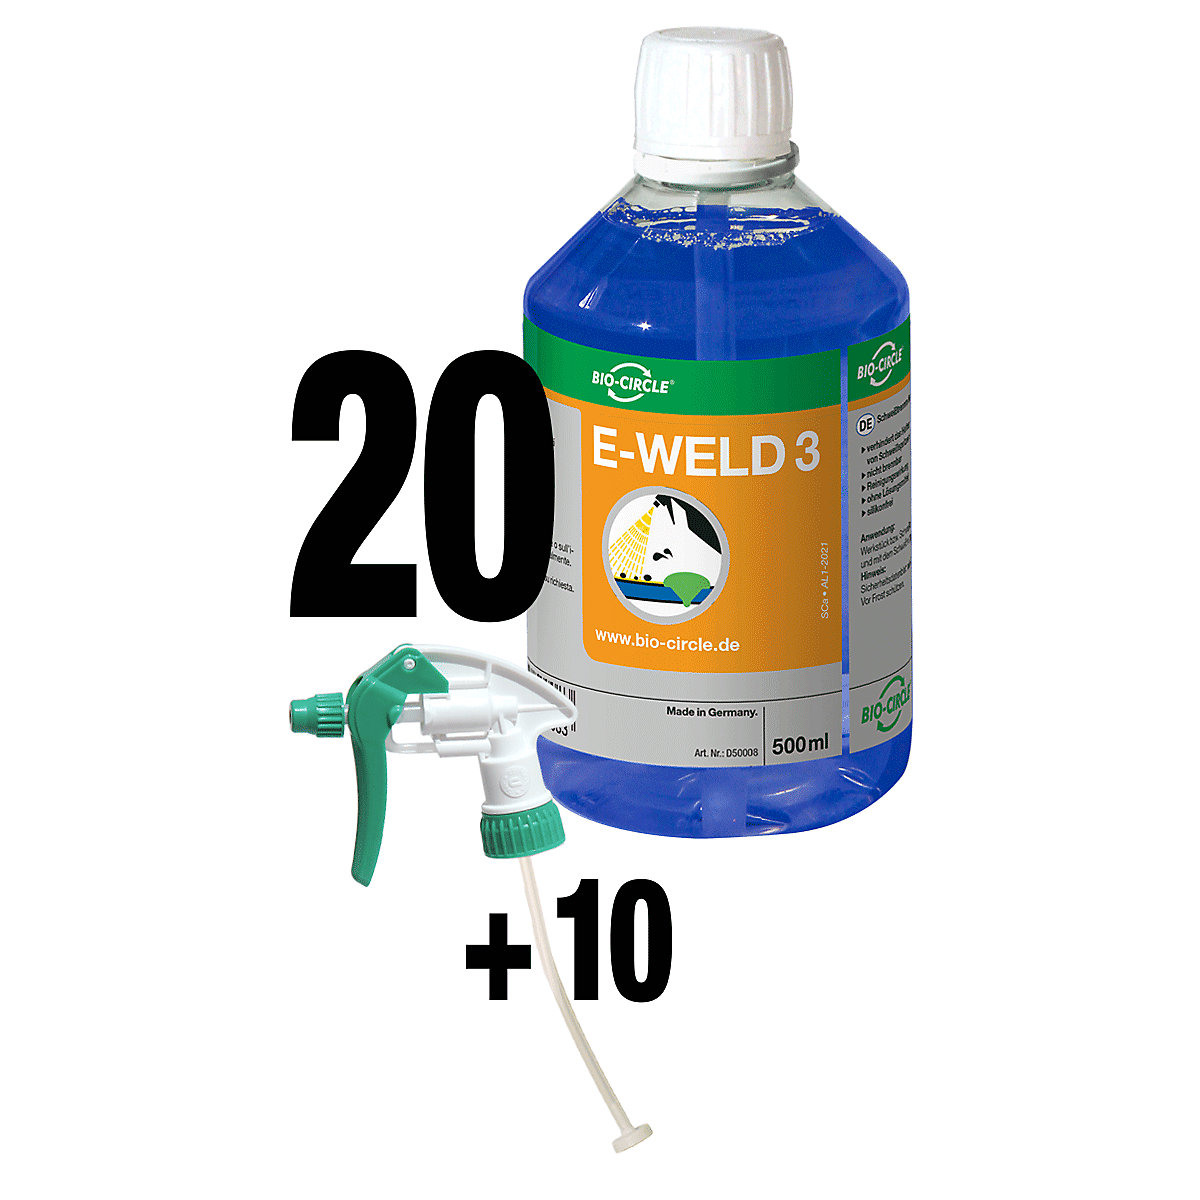 Zaščitno razpršilo za varjenje E-WELD 3 – Bio-Circle